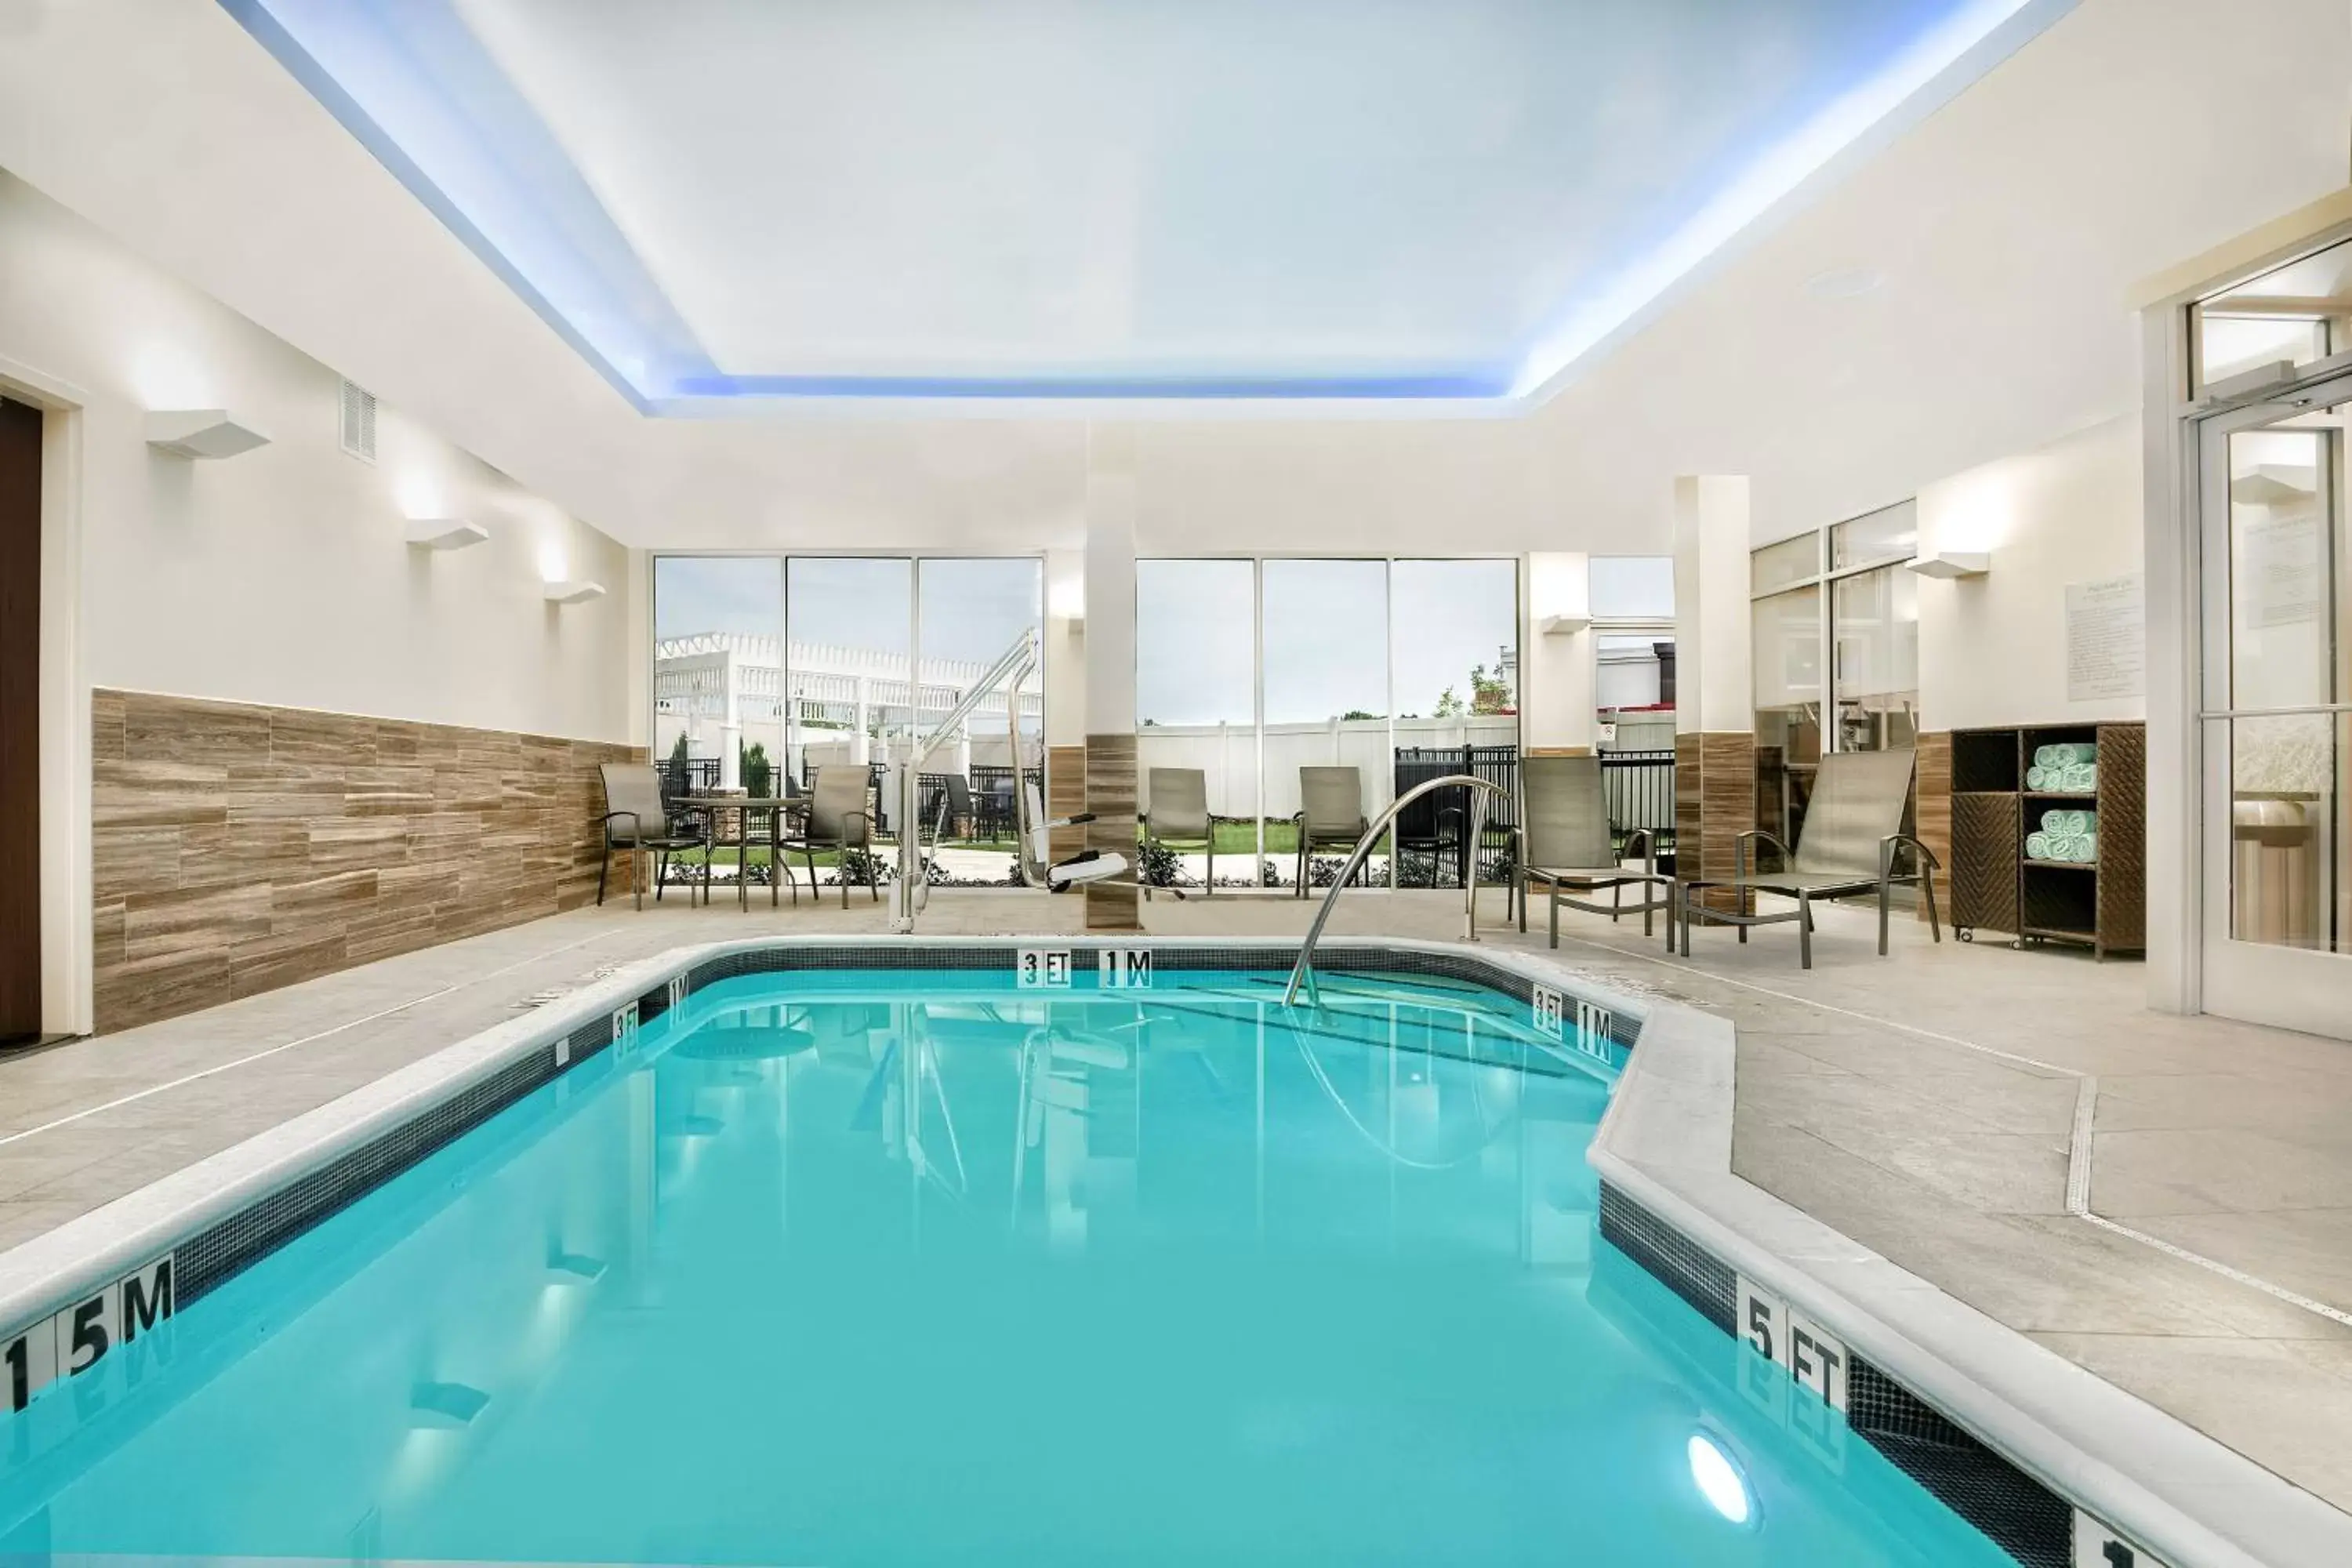 Swimming Pool in Fairfield Inn & Suites by Marriott Van